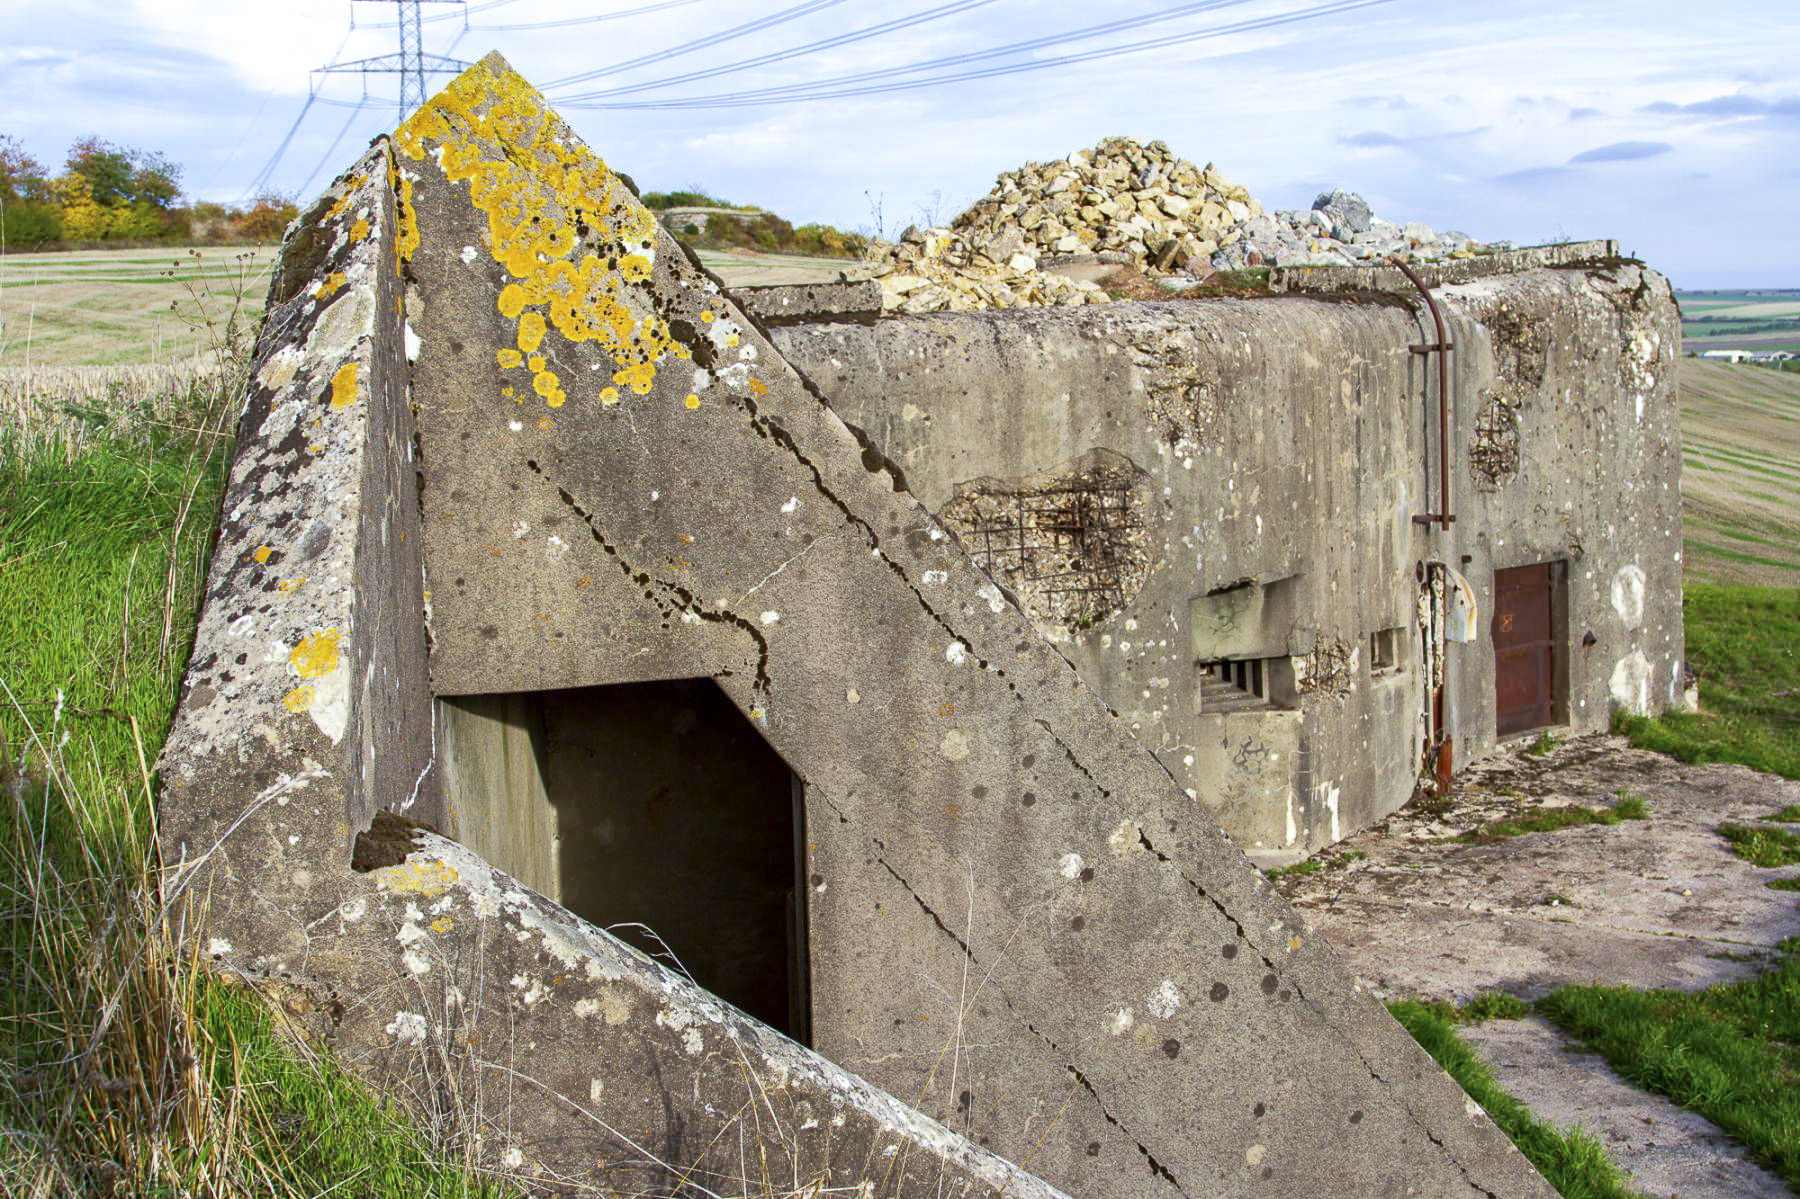 Ligne Maginot - BOVENBERG - BCA2 - (Casemate d'artillerie) - Vue latérale de la casemate
Entrée des latrines au premier plan